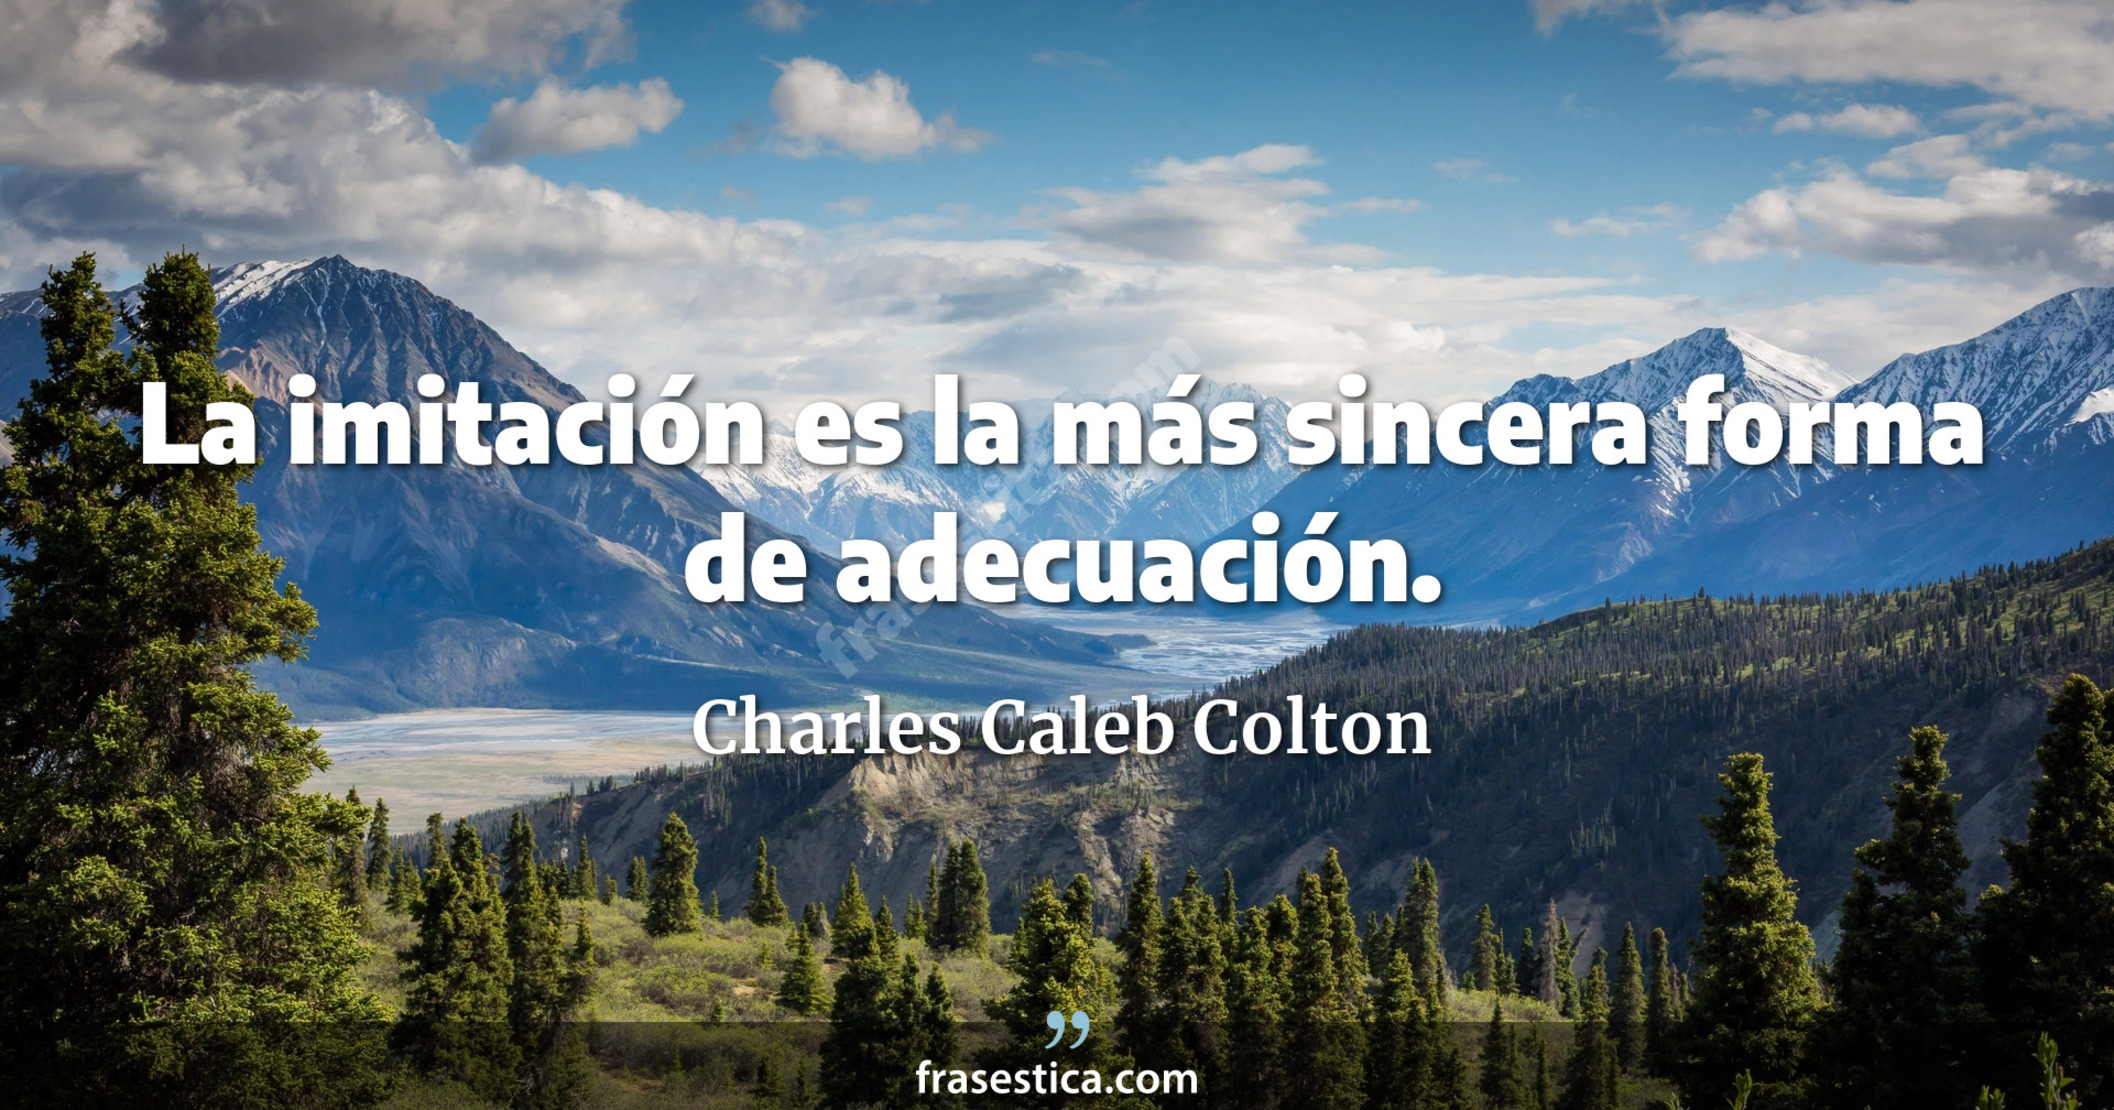 La imitación es la más sincera forma de adecuación. - Charles Caleb Colton